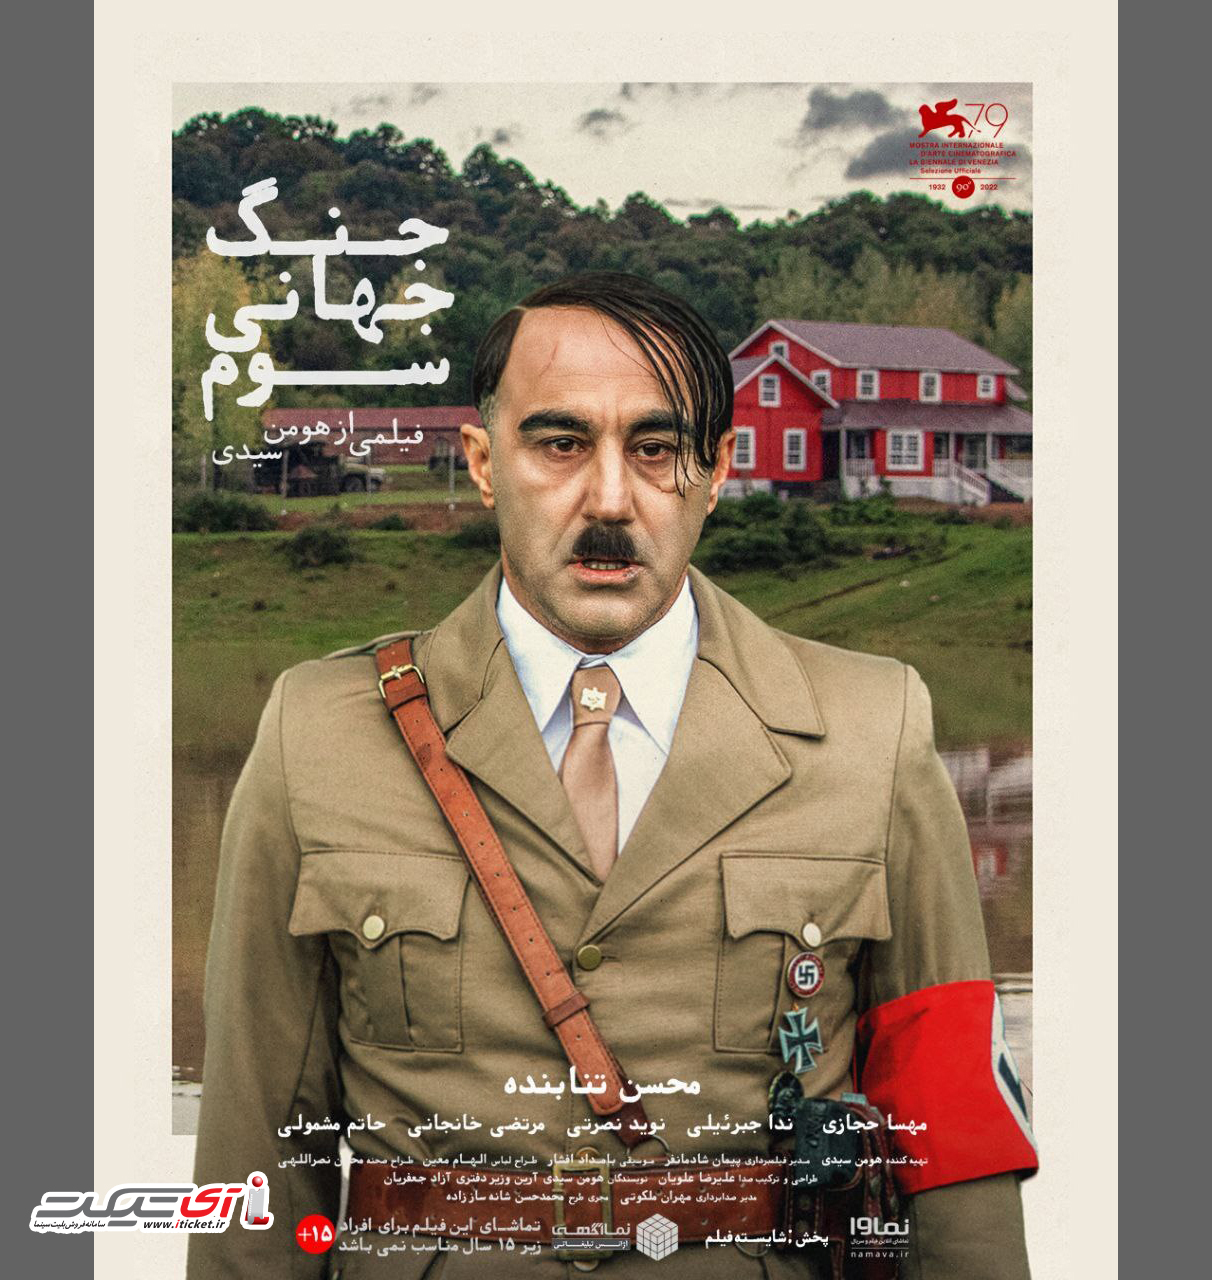 آی تیکت نیوز - جایزه بهترین فیلم جشنواره استانبول برای «جنگ جهانی سوم»